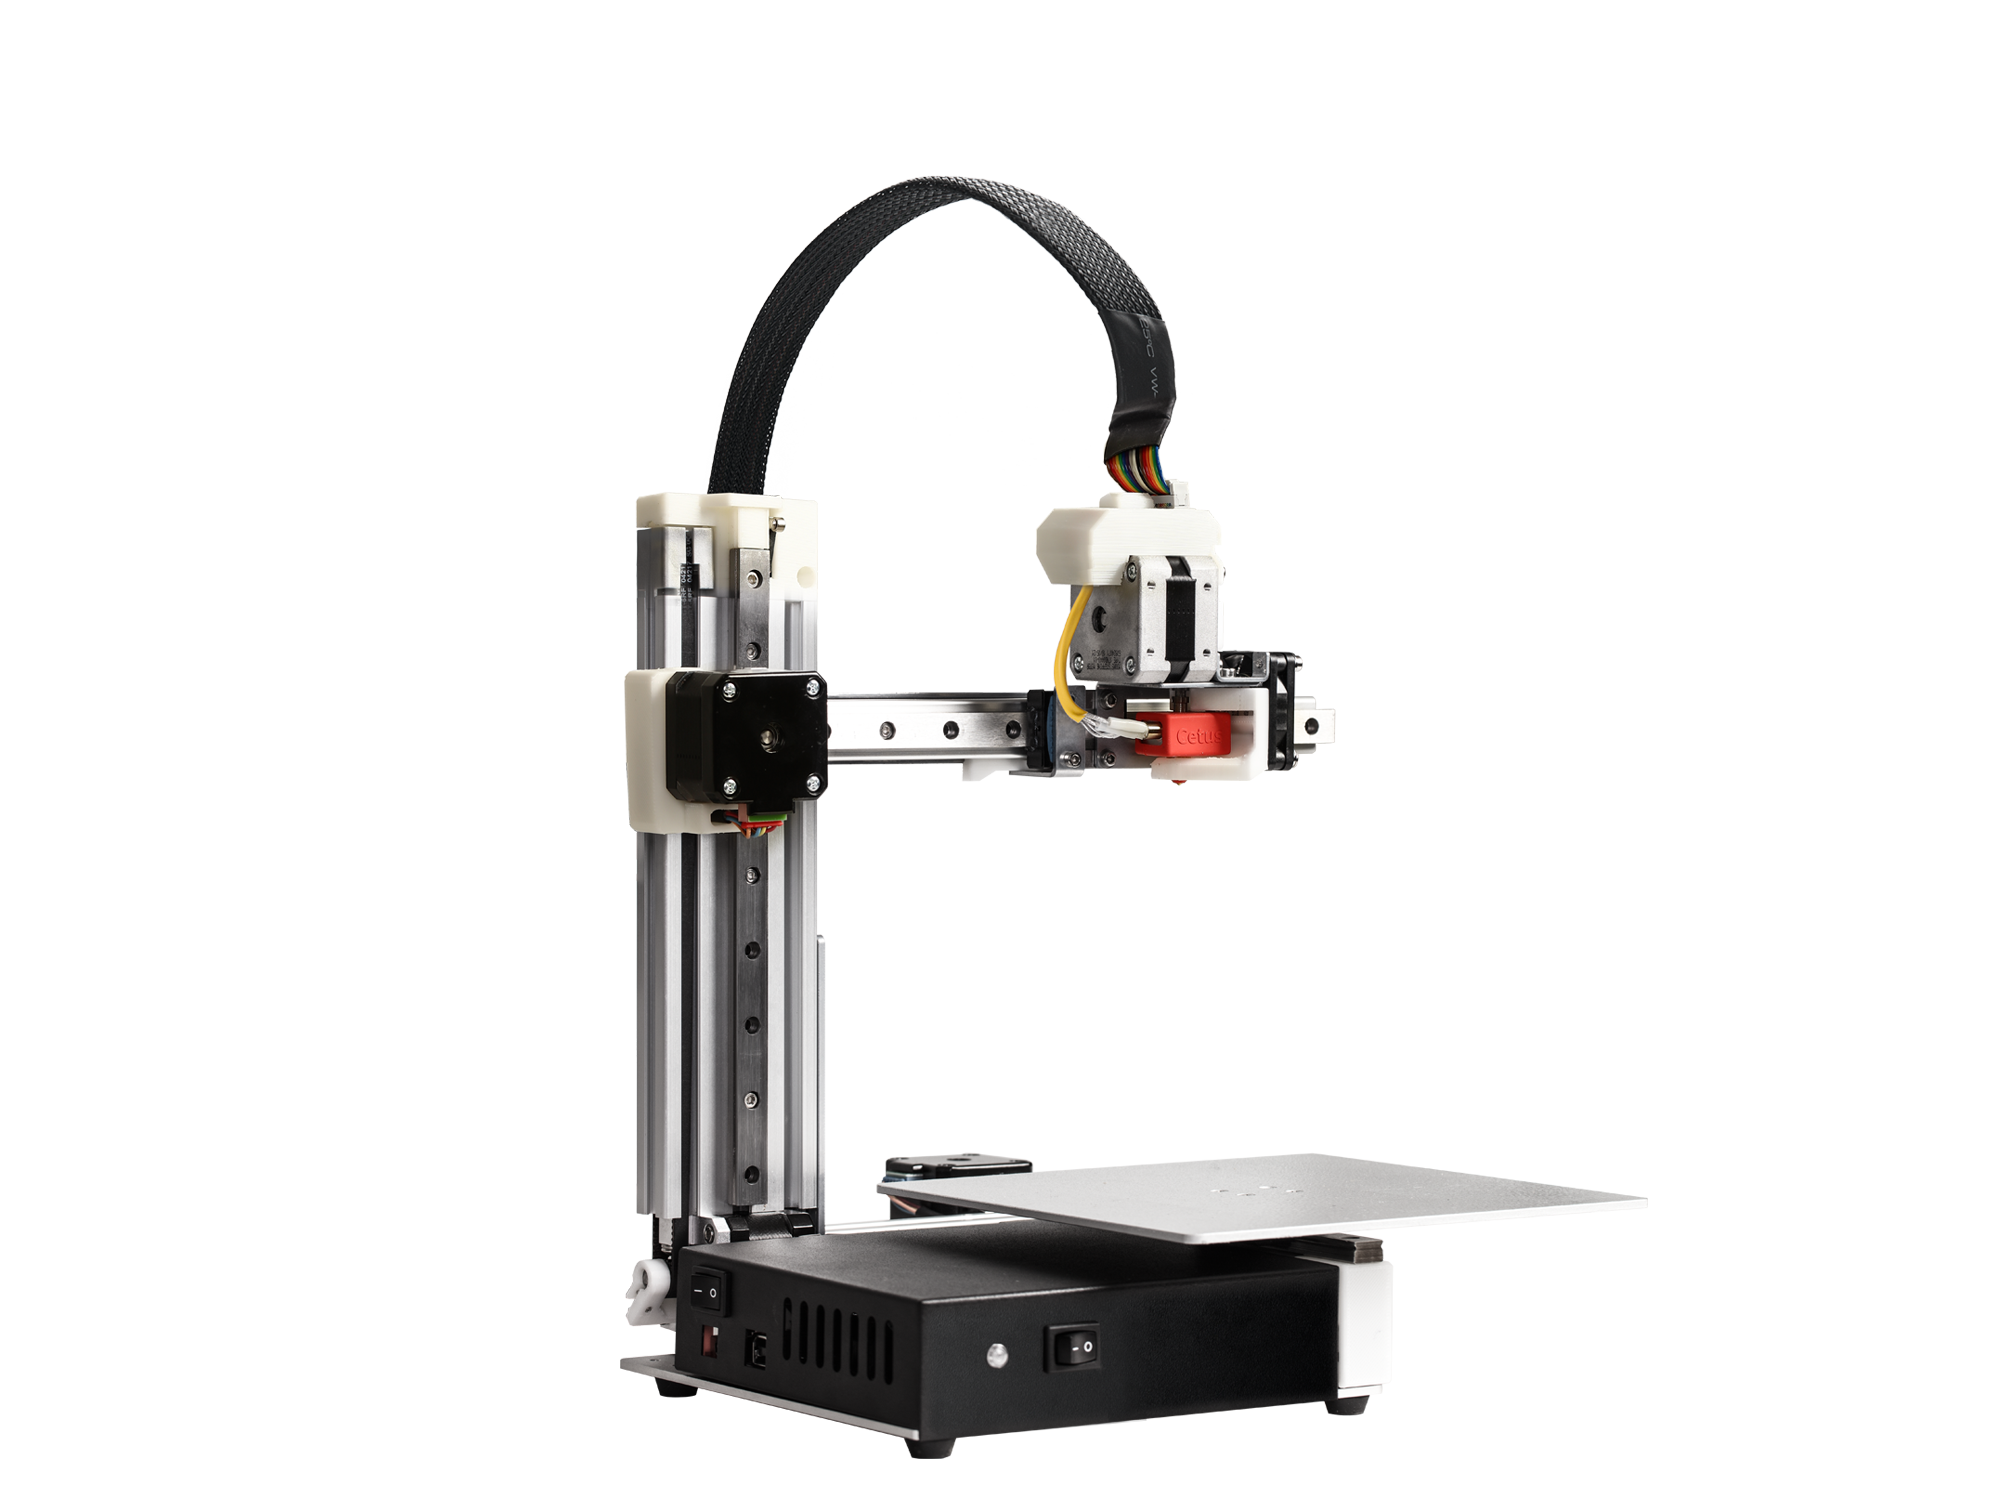 Cetus 3D (Four Versions) - Tiertime 3D Printer